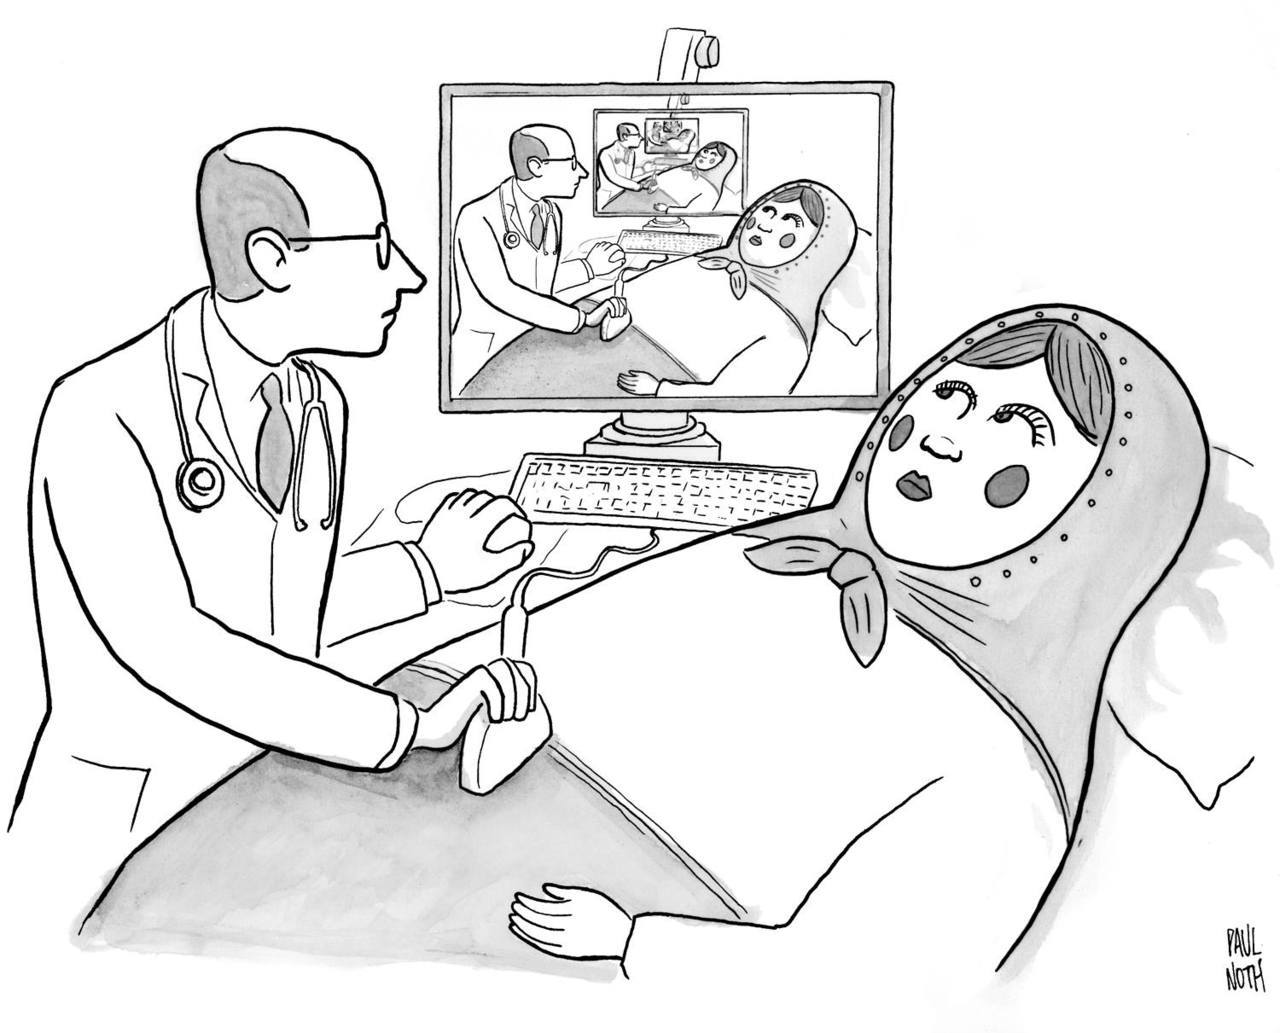 1280x1033, 116 Kb / узи, врач, матрёшка, беременная, ч/б, рекурсия, Paul Noth